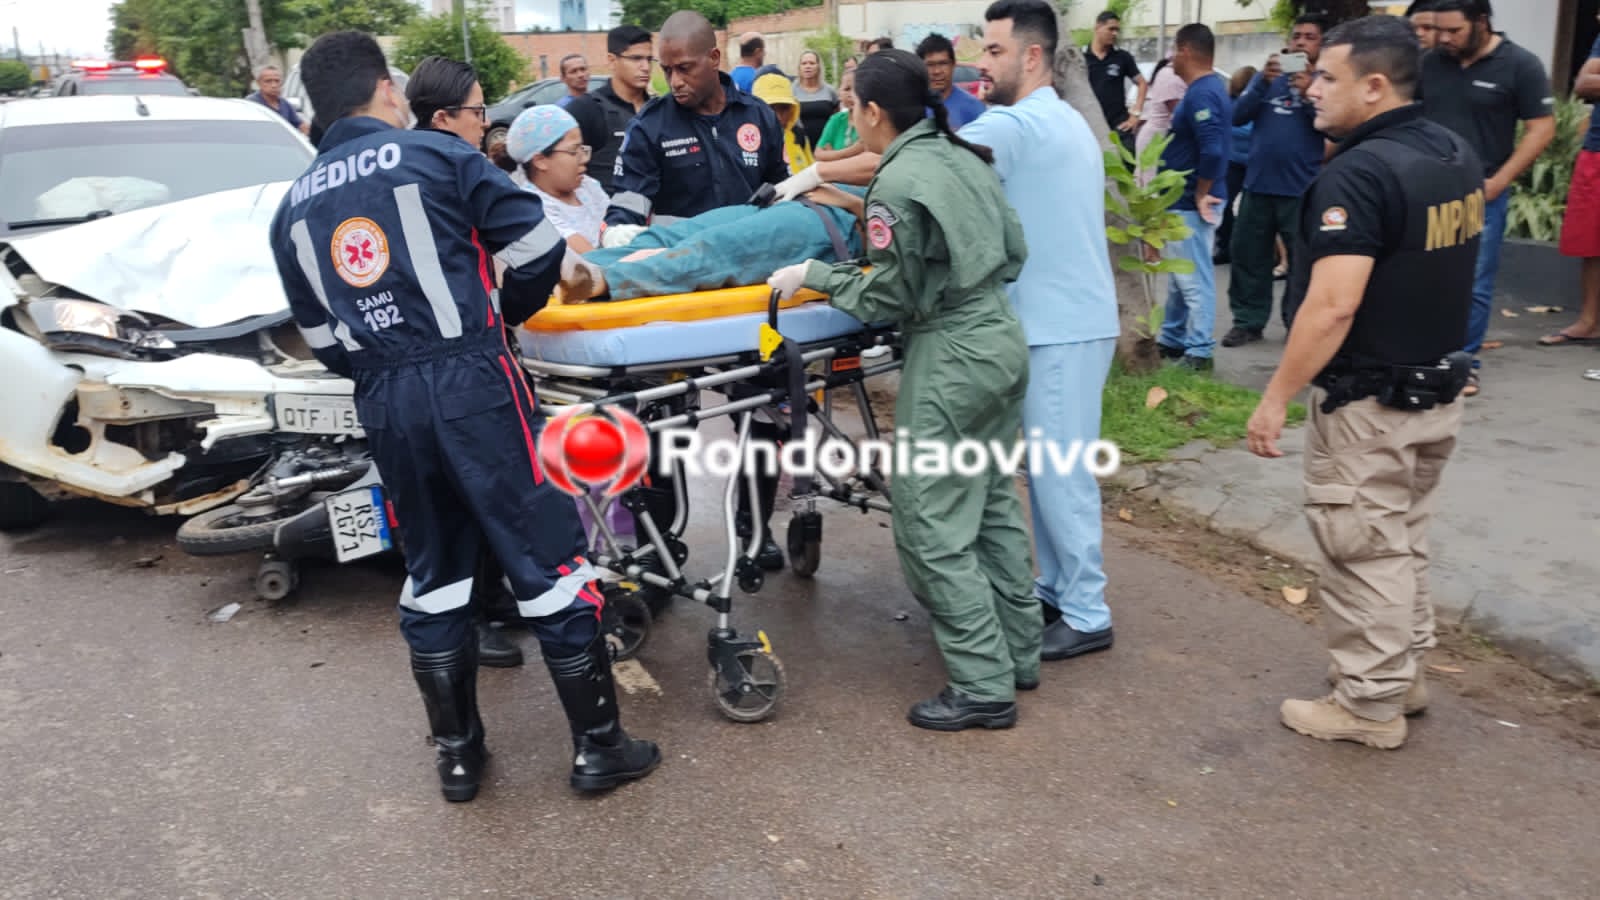 URGENTE: Casal fica gravemente ferido ao ser arrastado por carro na Abunã